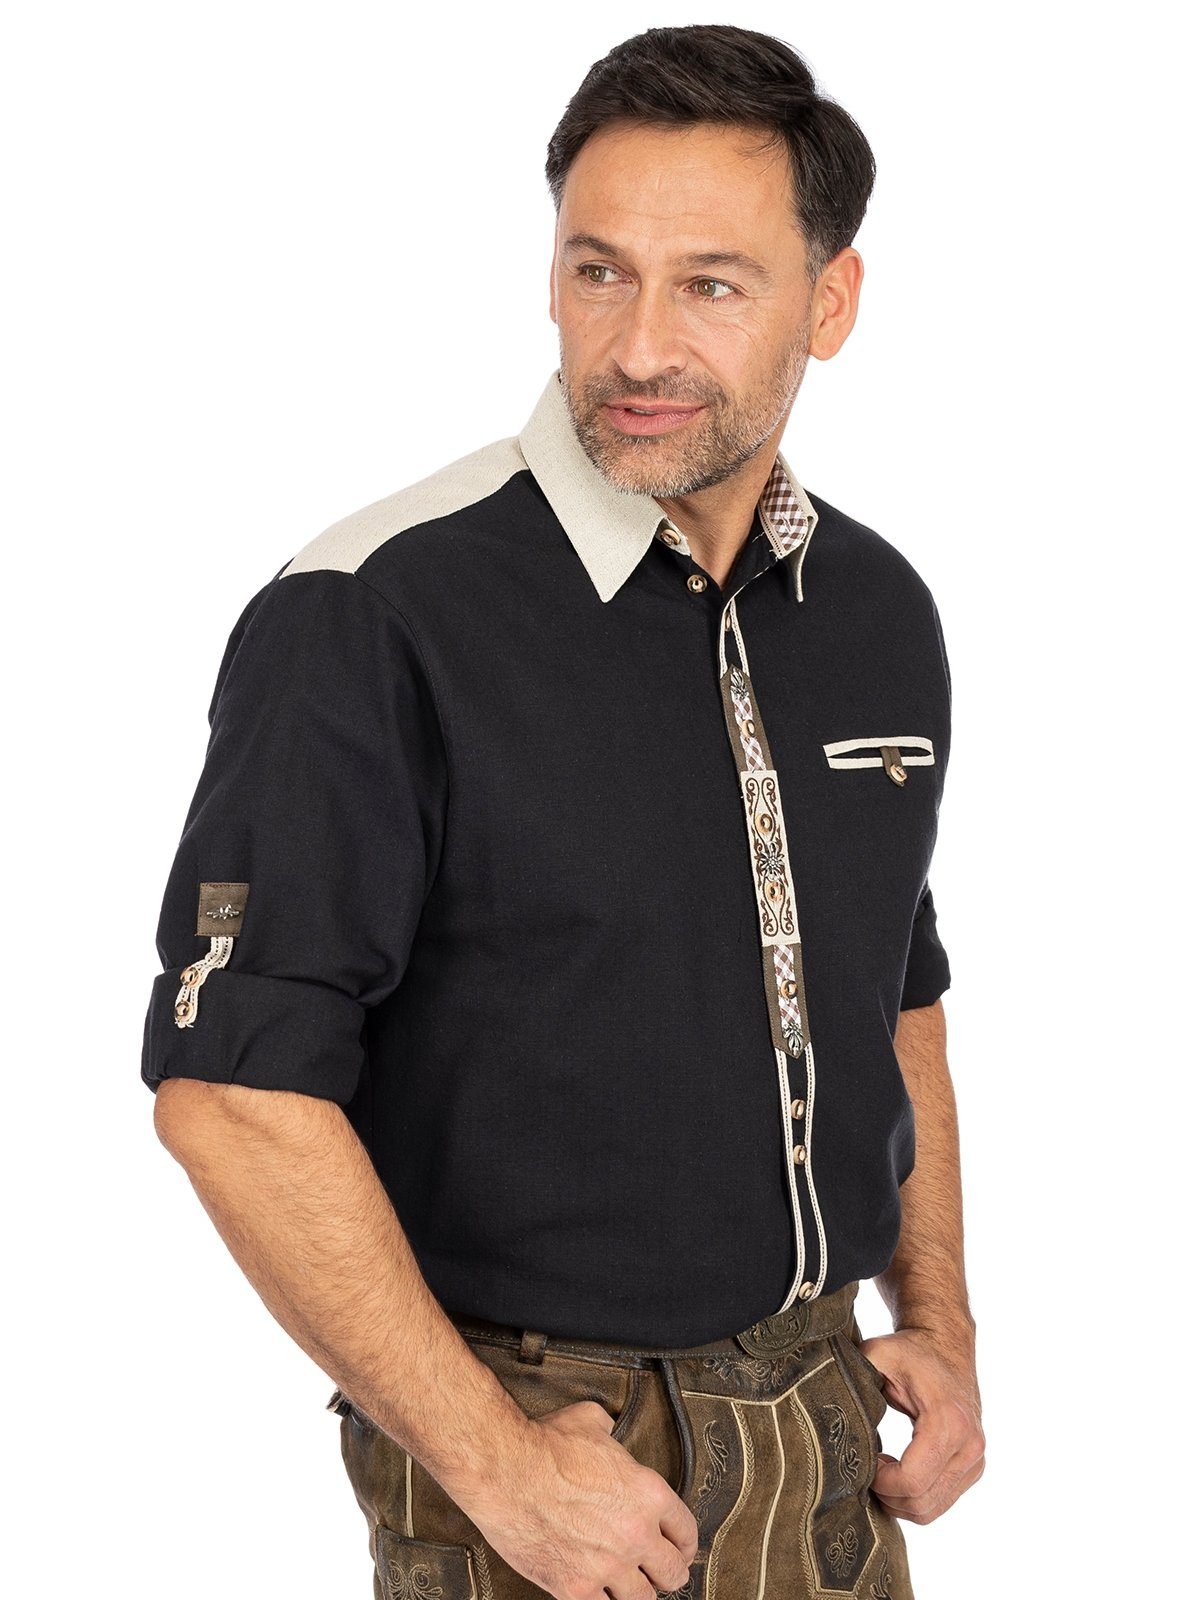 LENNART Langarm Fit) Trachtenhemd (Regular Hemd OS-Trachten schwarz